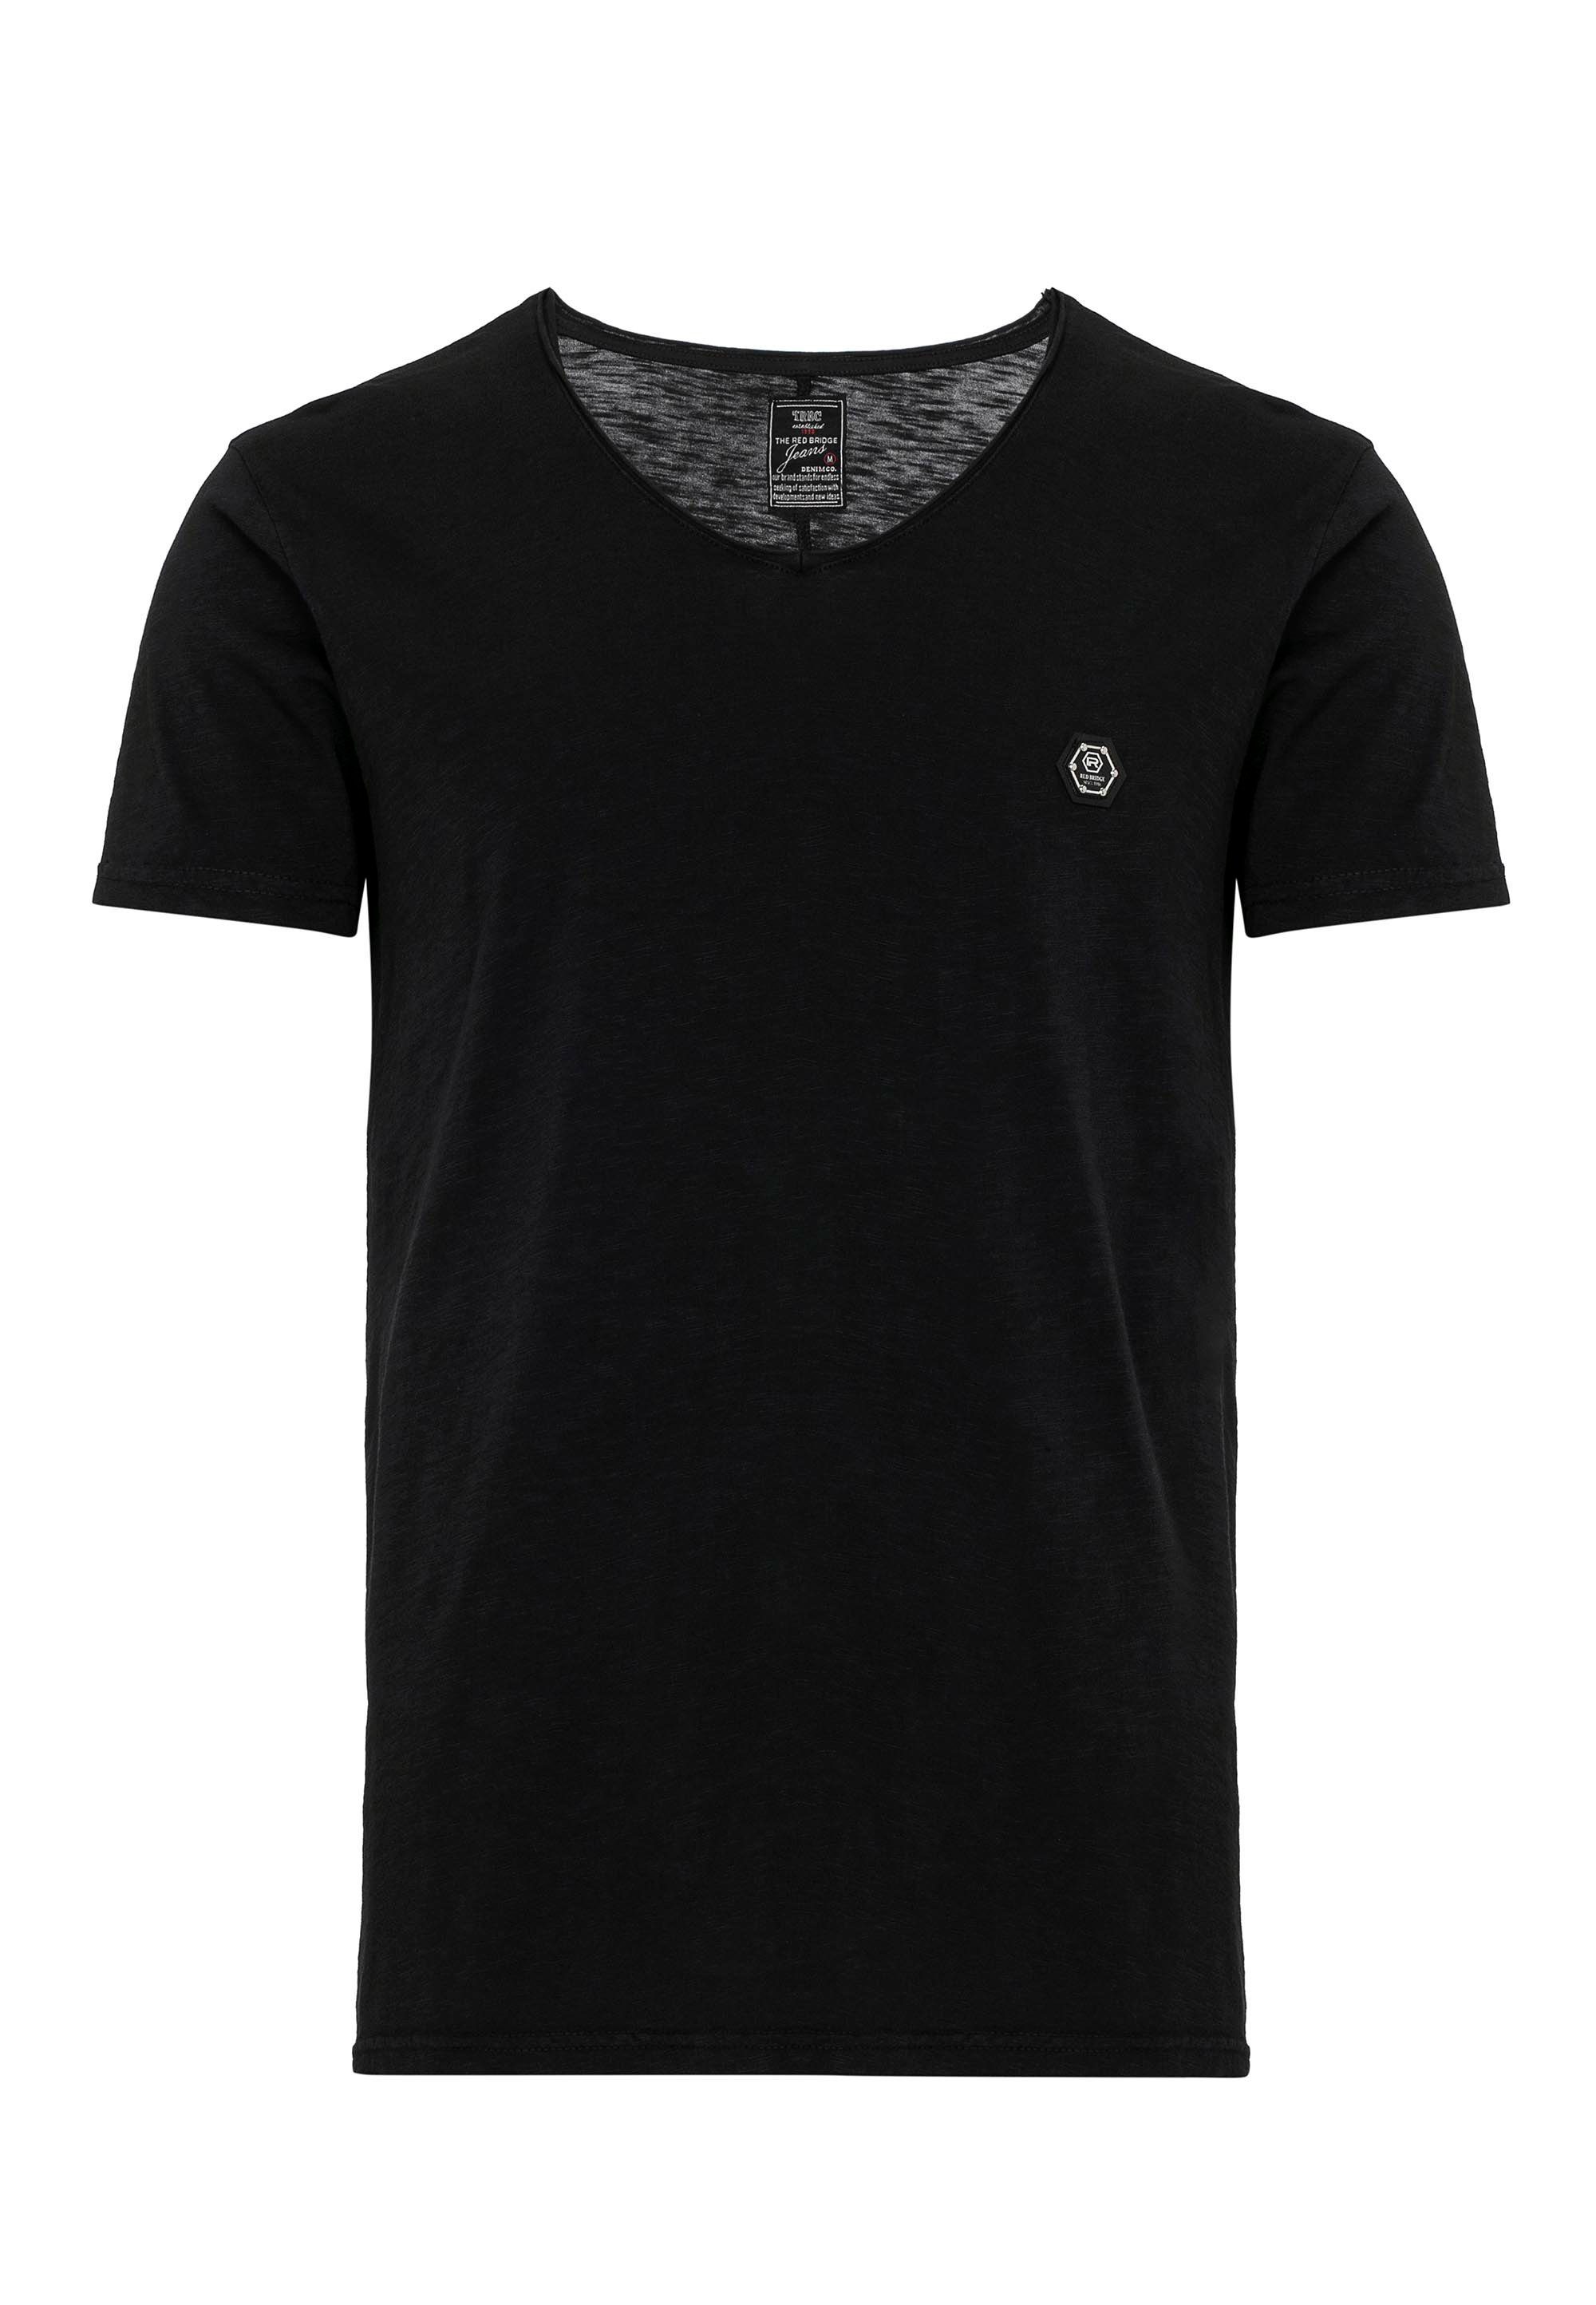 Design RedBridge lässigem schwarz T-Shirt Houston in